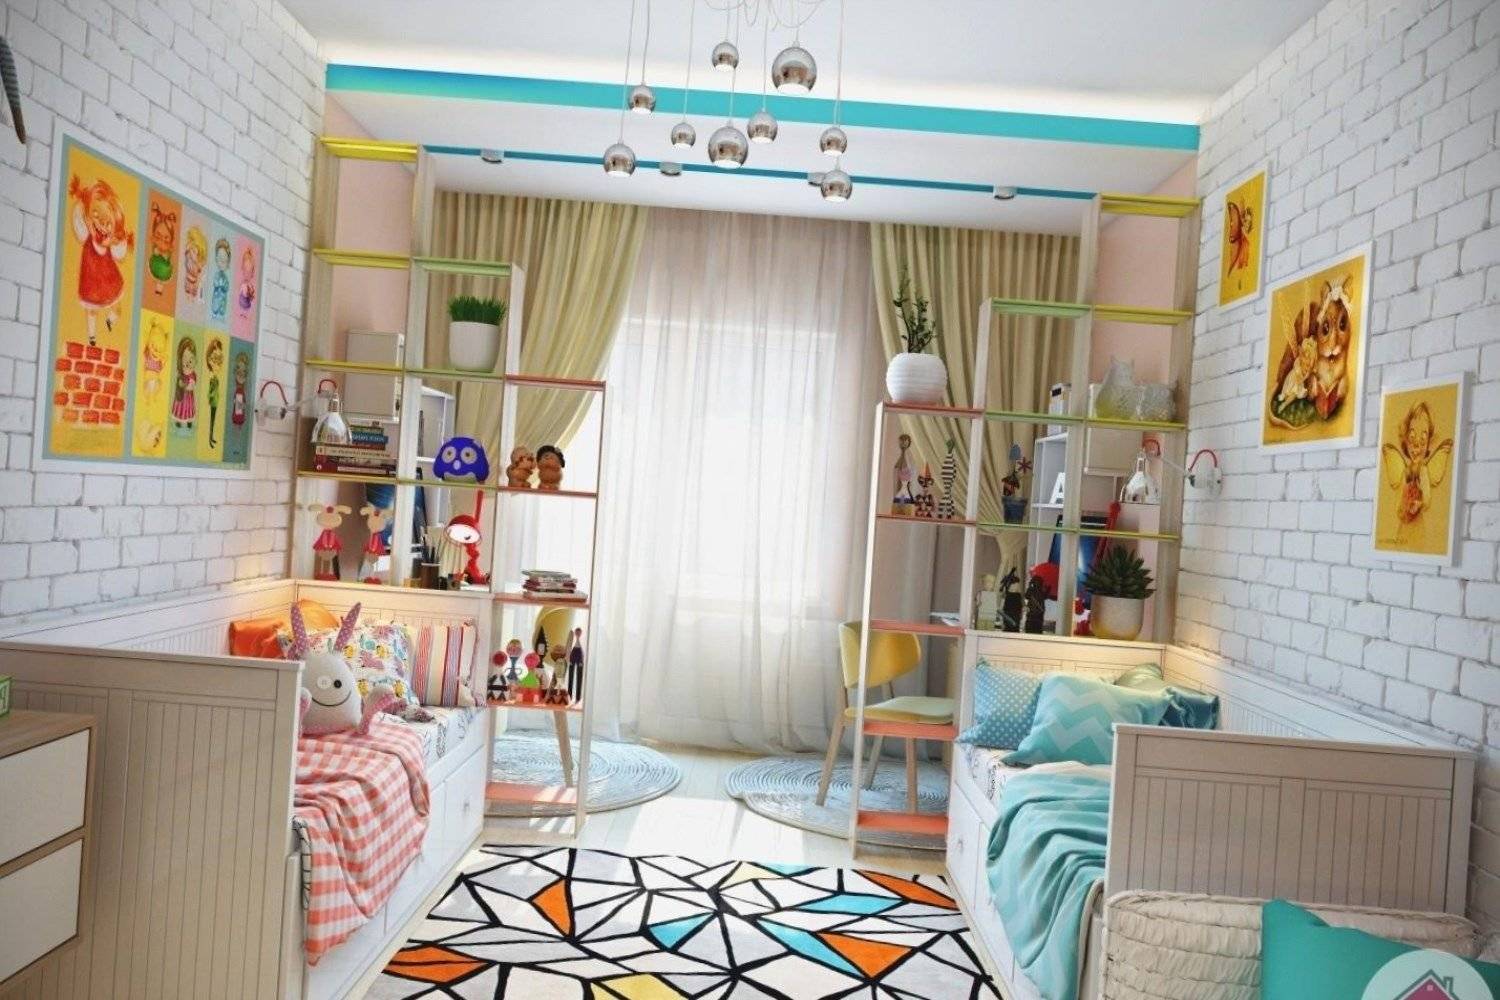 Детская мебель для двоих детей: фото идеи дизайна интерьера детской комнаты